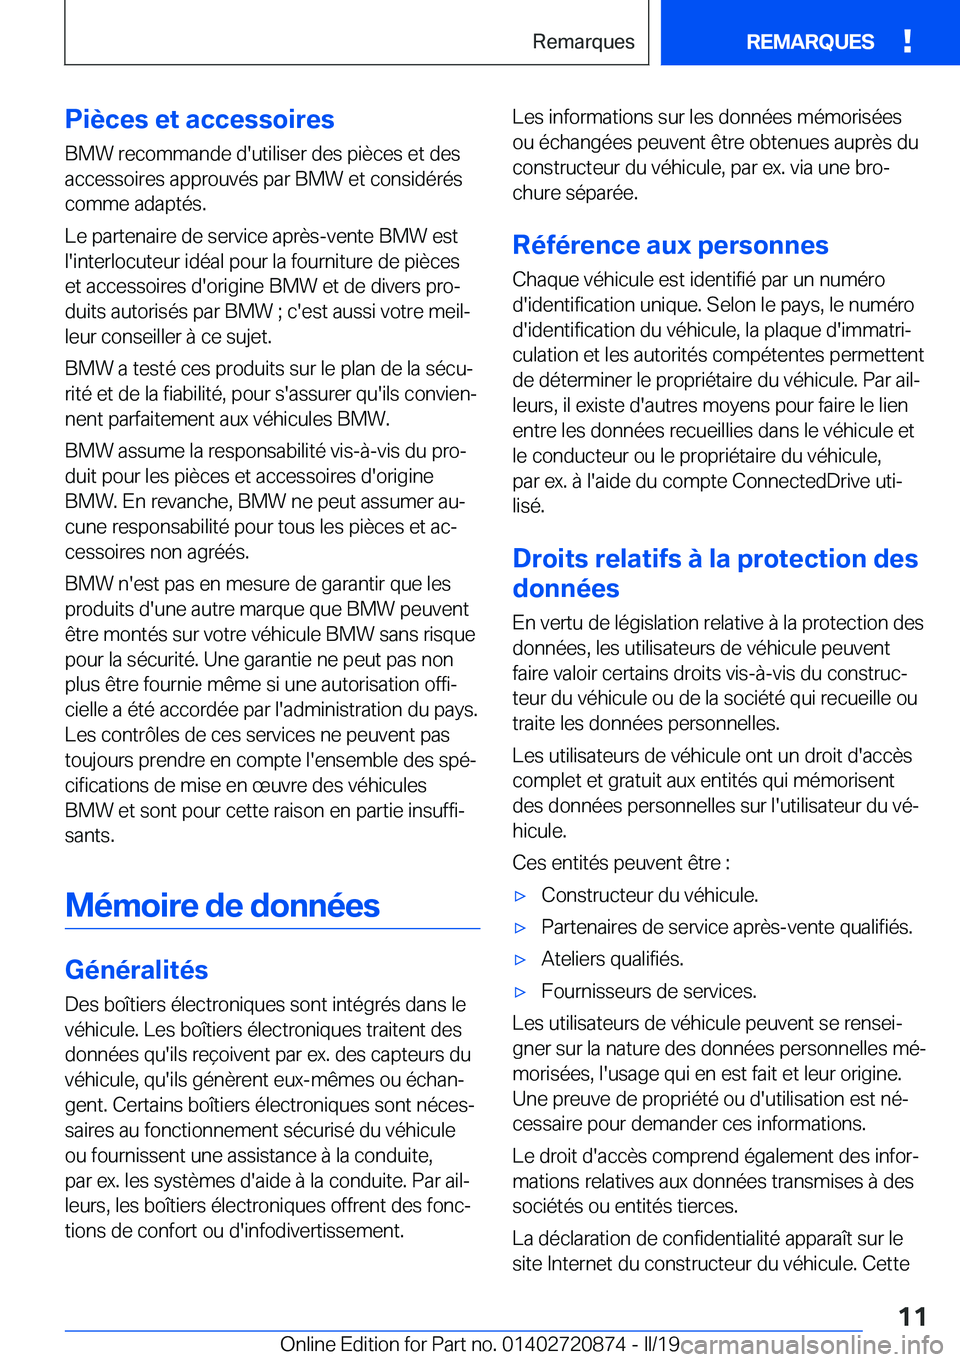 BMW X7 2019  Notices Demploi (in French) �P�i�è�c�e�s��e�t��a�c�c�e�s�s�o�i�r�e�s
�B�M�W��r�e�c�o�m�m�a�n�d�e��d�'�u�t�i�l�i�s�e�r��d�e�s��p�i�è�c�e�s��e�t��d�e�s
�a�c�c�e�s�s�o�i�r�e�s��a�p�p�r�o�u�v�é�s��p�a�r��B�M�W��e�